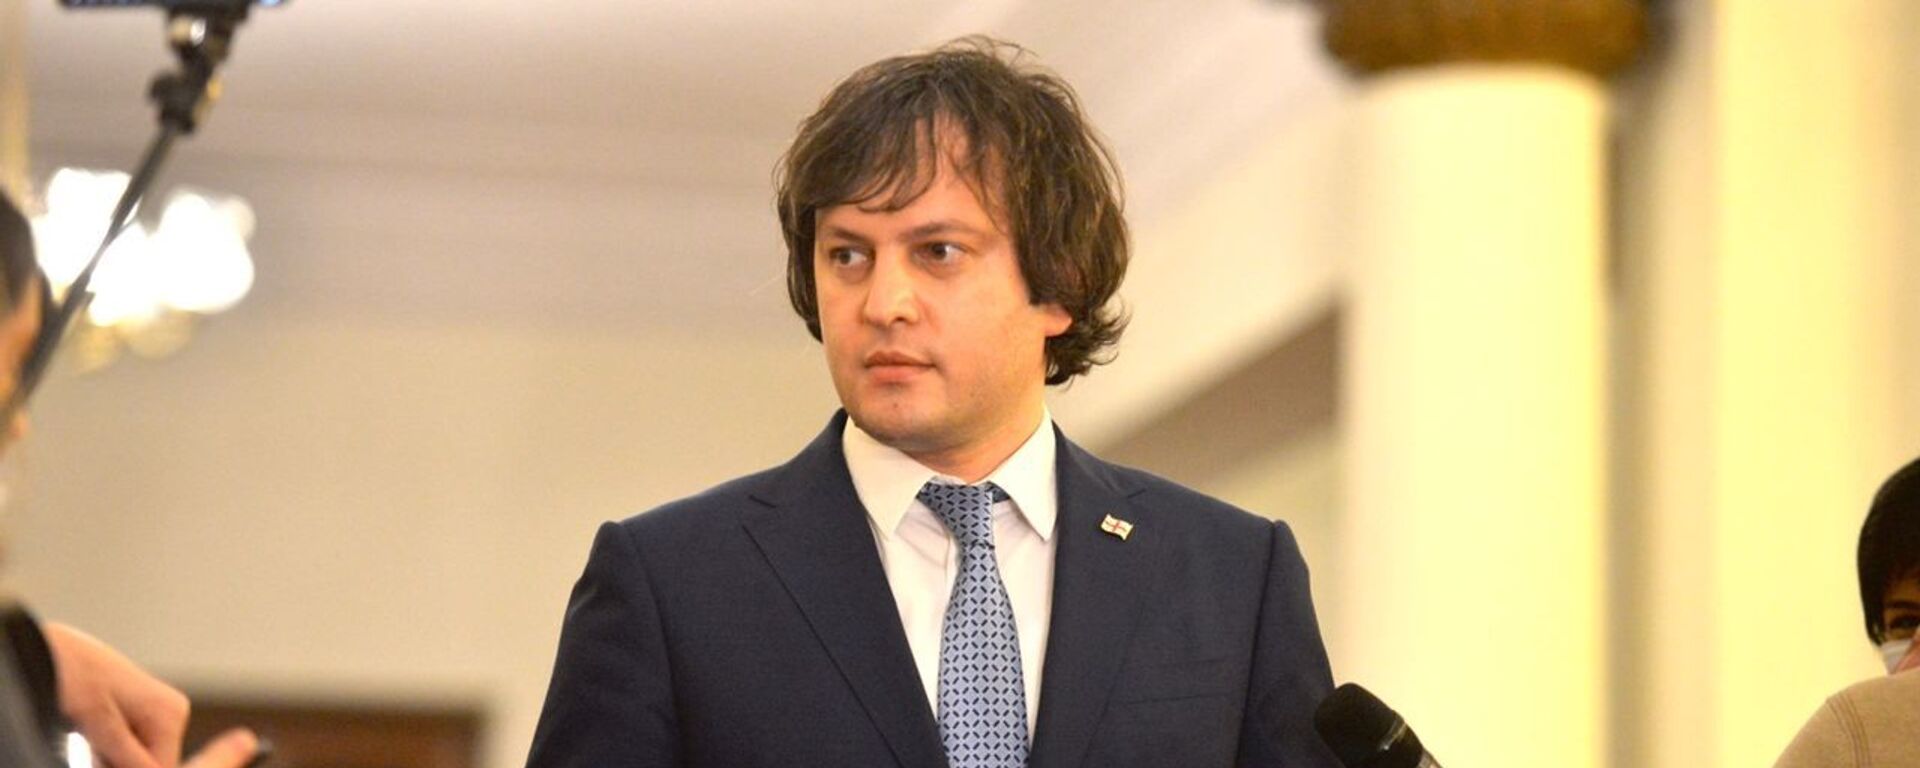 Ираклий Кобахидзе. Парламент Грузии десятого созыва начал работу 11 декабря 2020 года - Sputnik Грузия, 1920, 14.05.2021